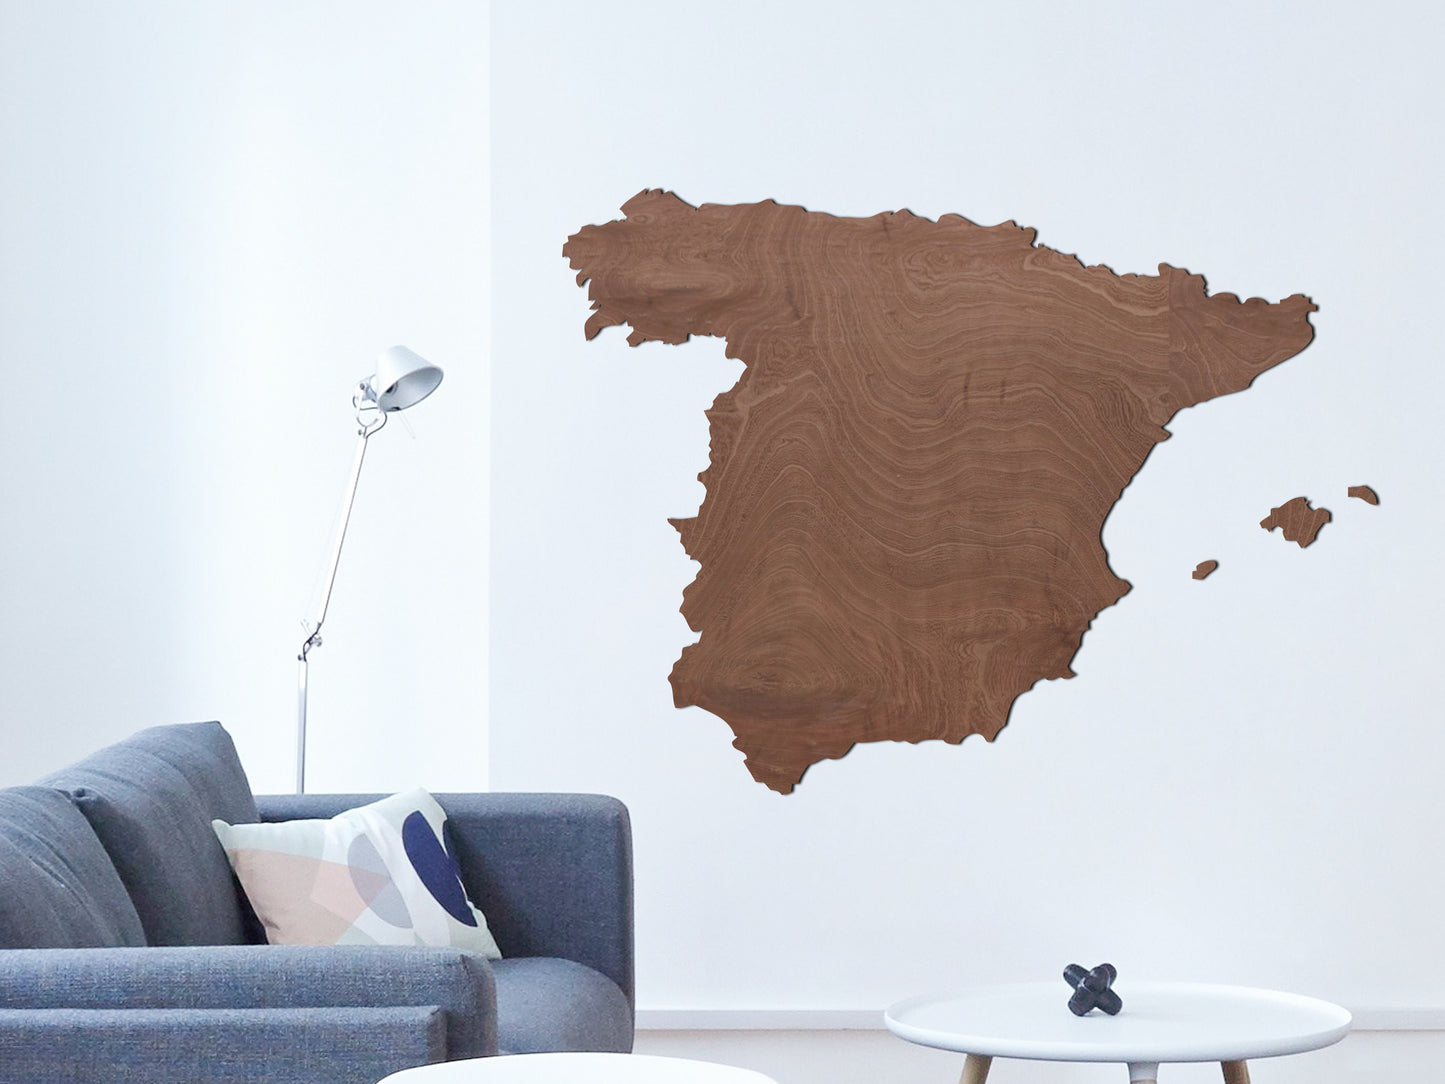 Houten landkaart - Spanje